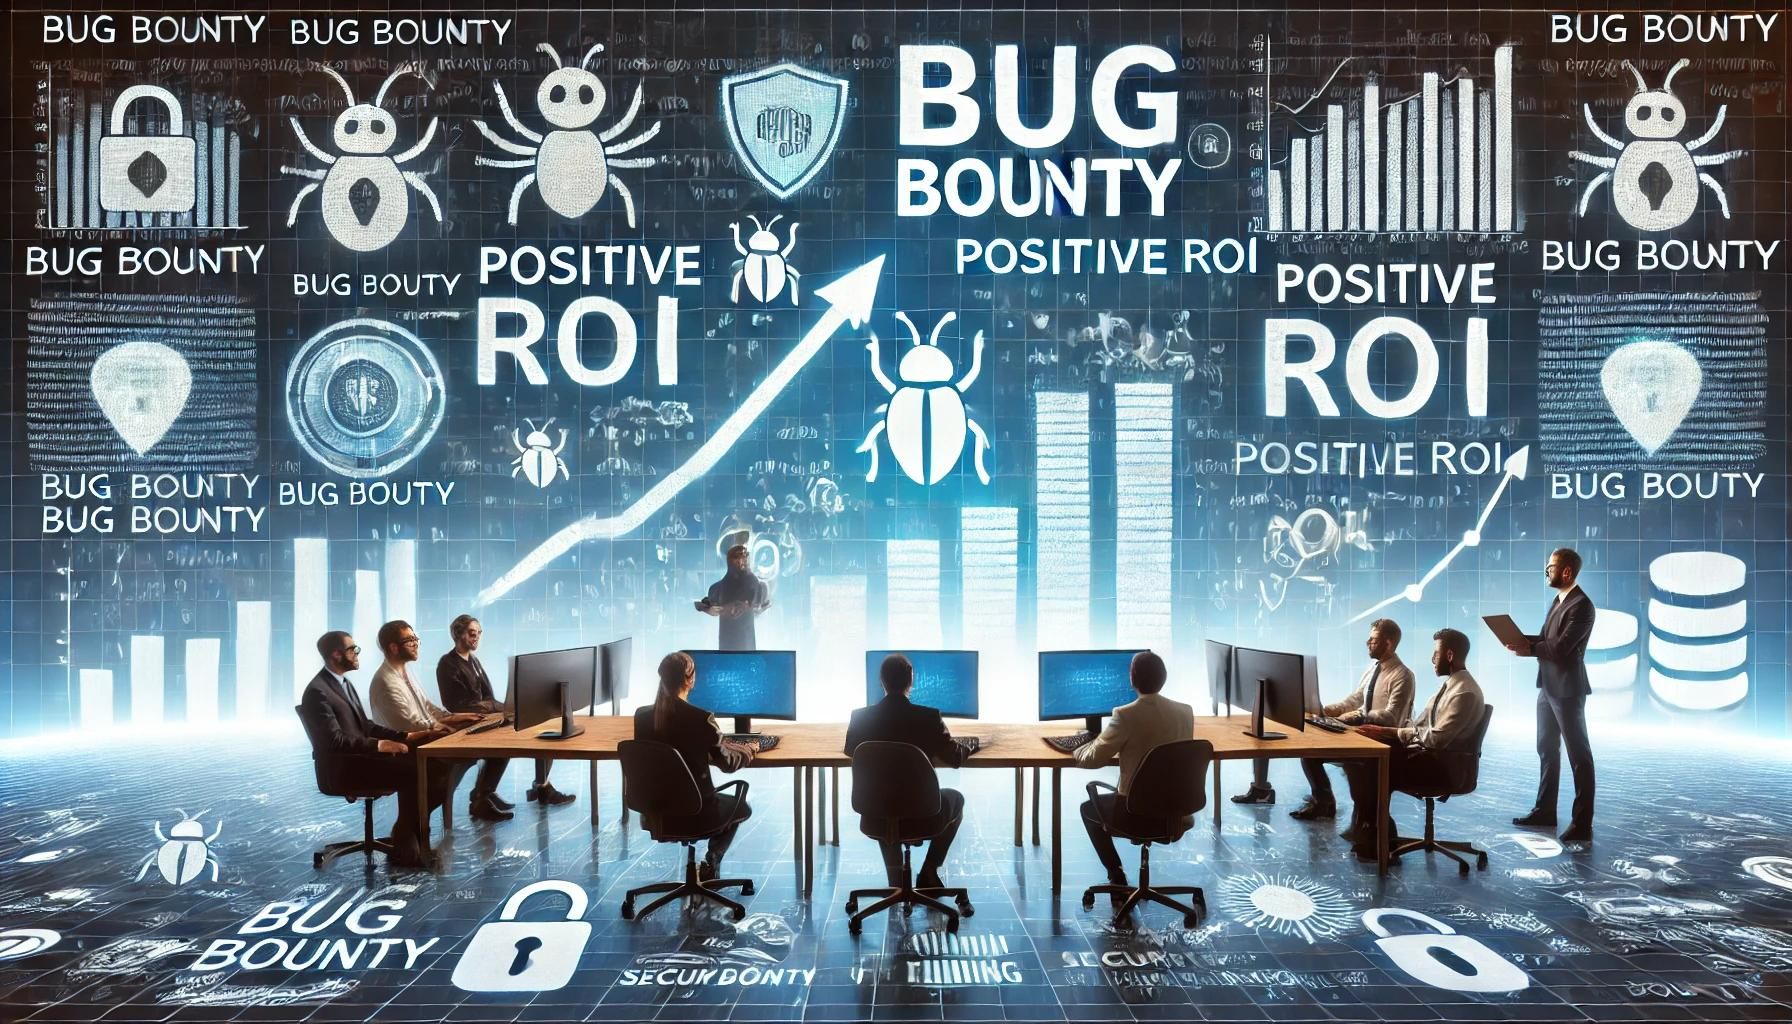 Evaluating ROI in Bug Bounty Programs vs. Traditional Pentesting